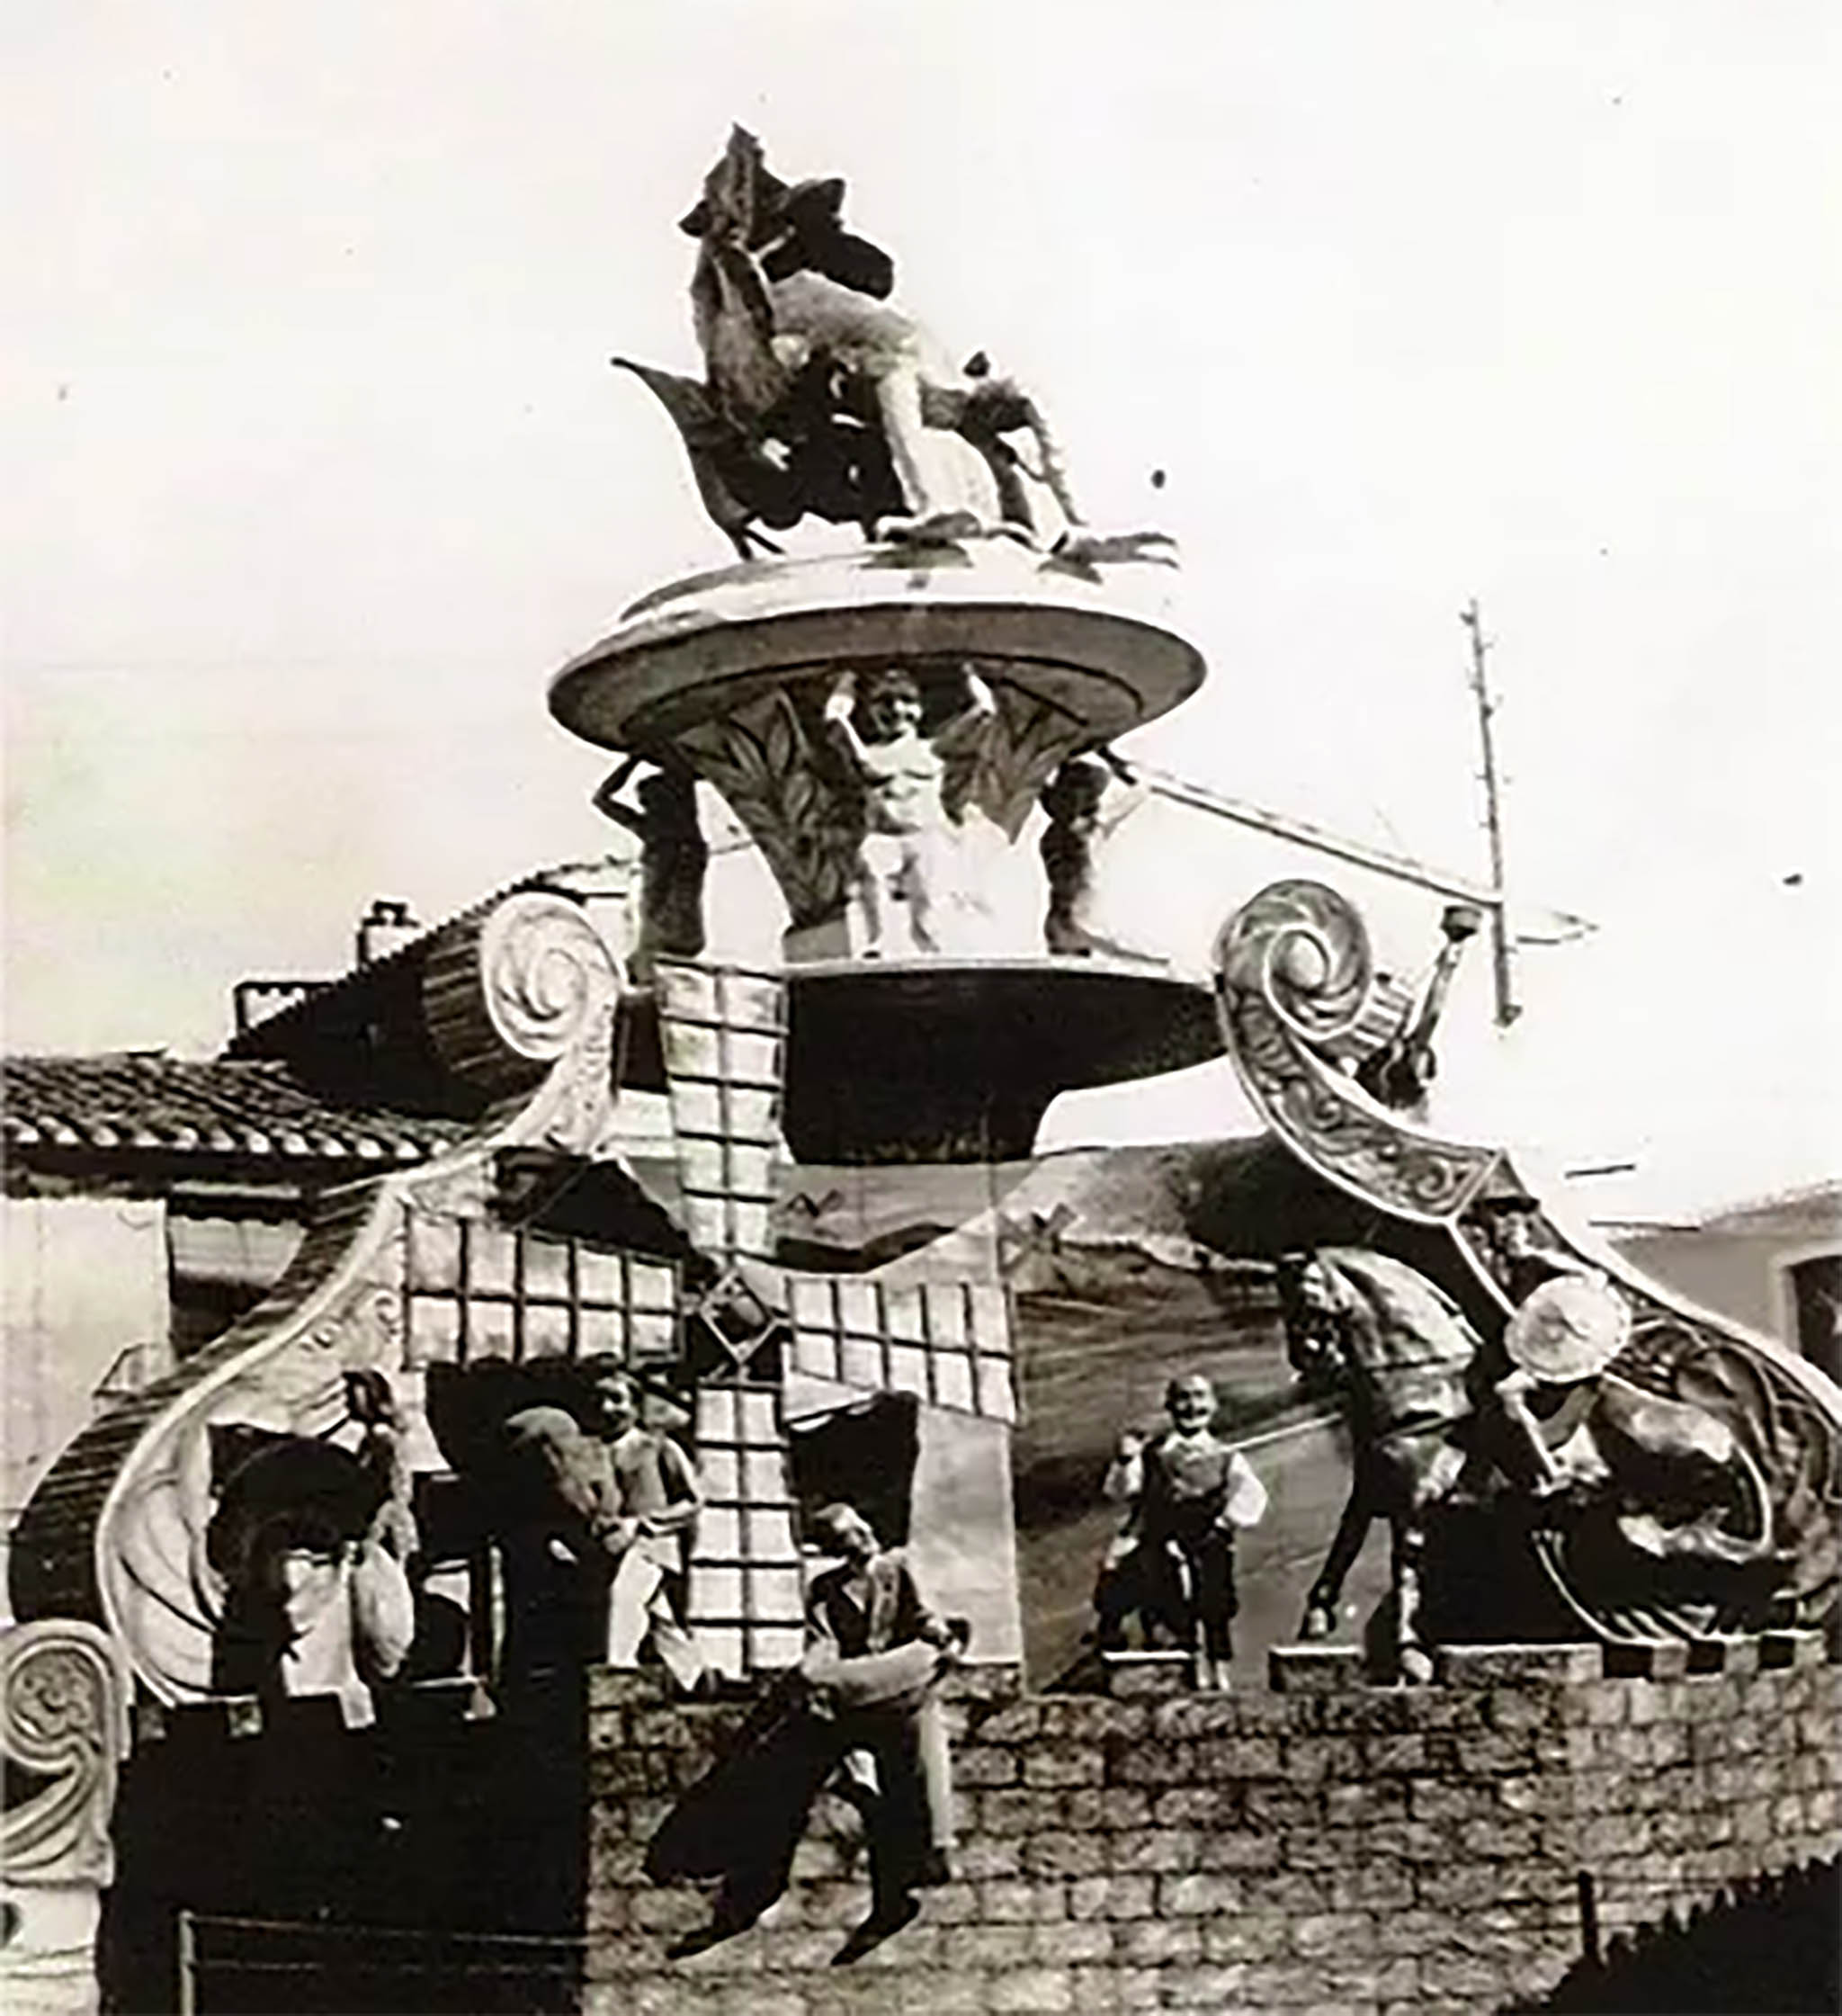 Monumento con el que la falla Oeste ganó su primer primer premio en 1950